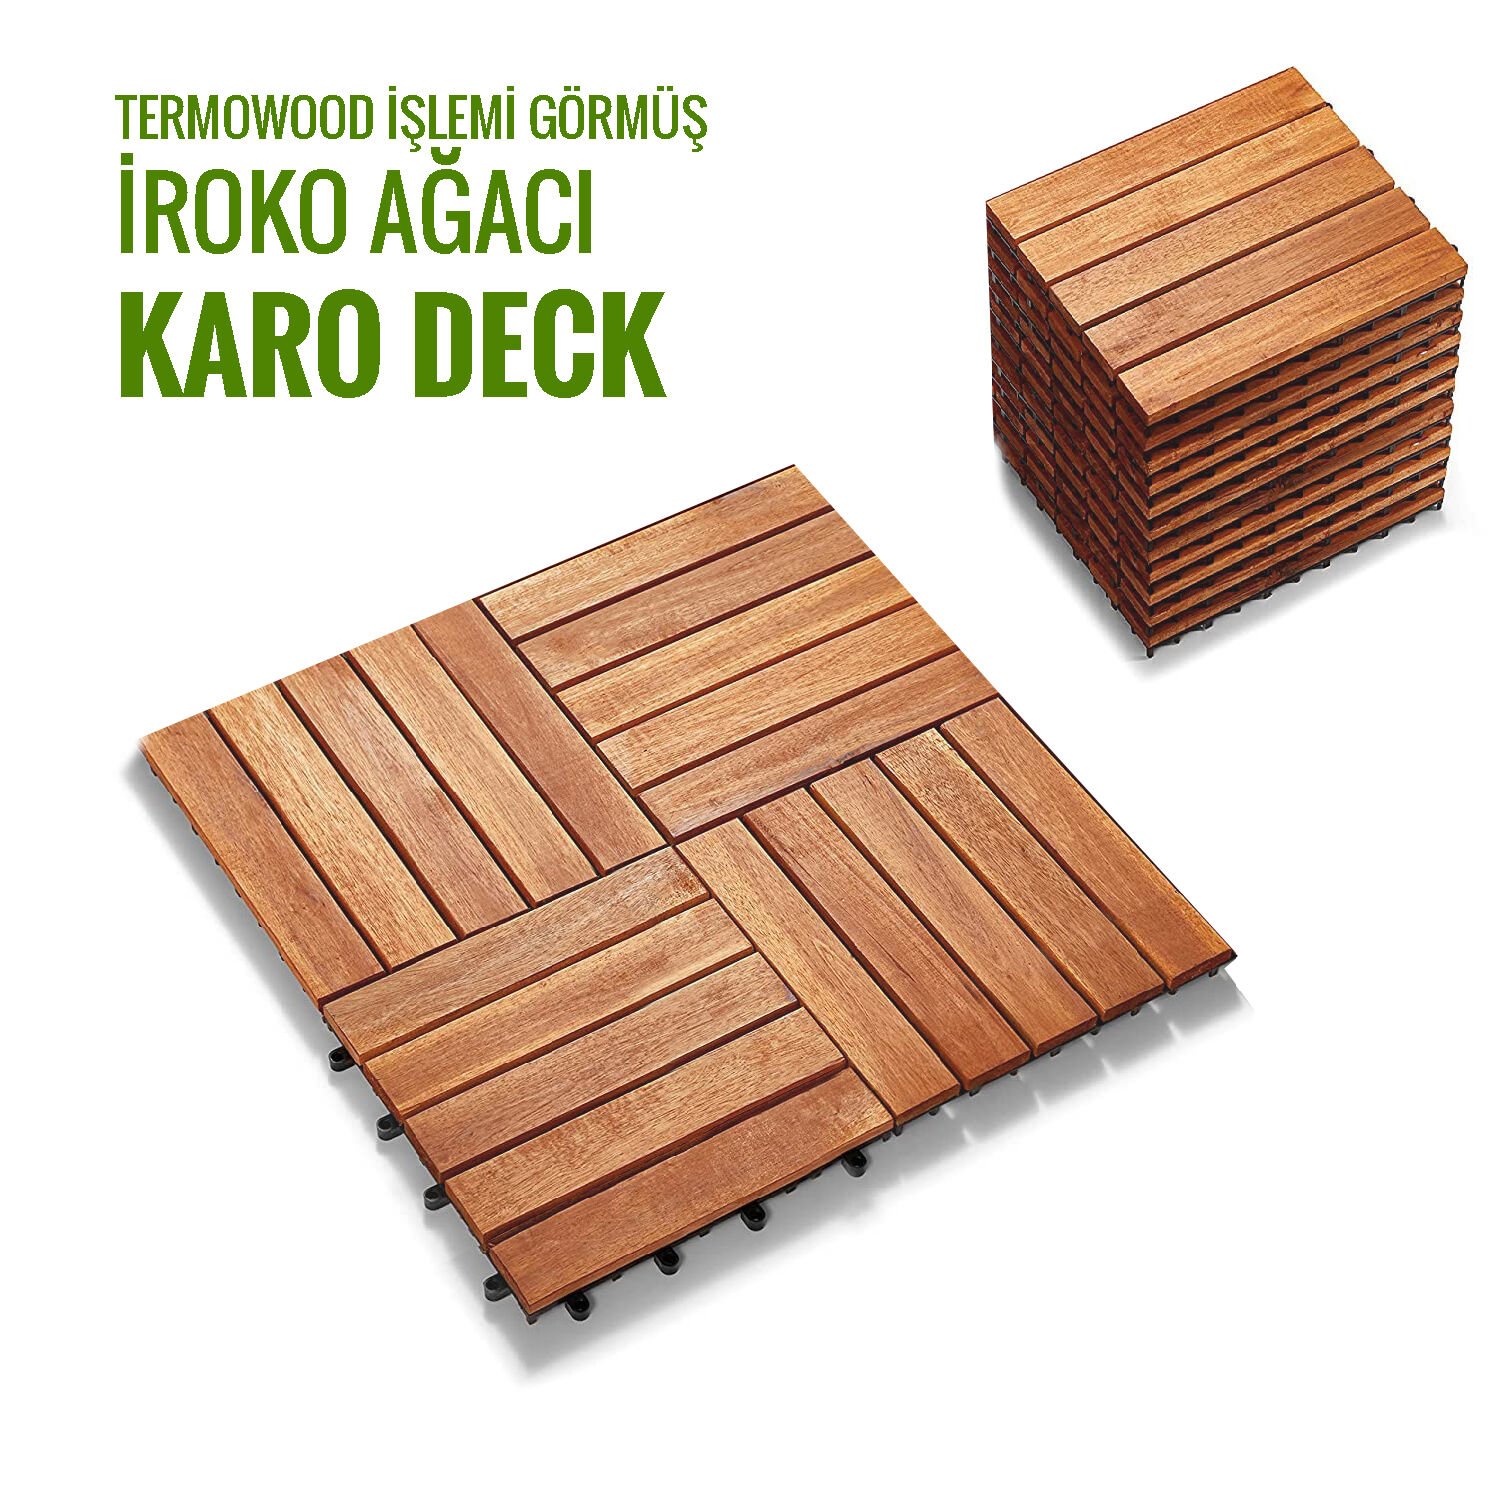 SUNSOE İroko Ağacı Balkon Bahçe Ahşap Yer Döşemesi Karo Deck 30x30 cm – 10 Adet (0,9m2)